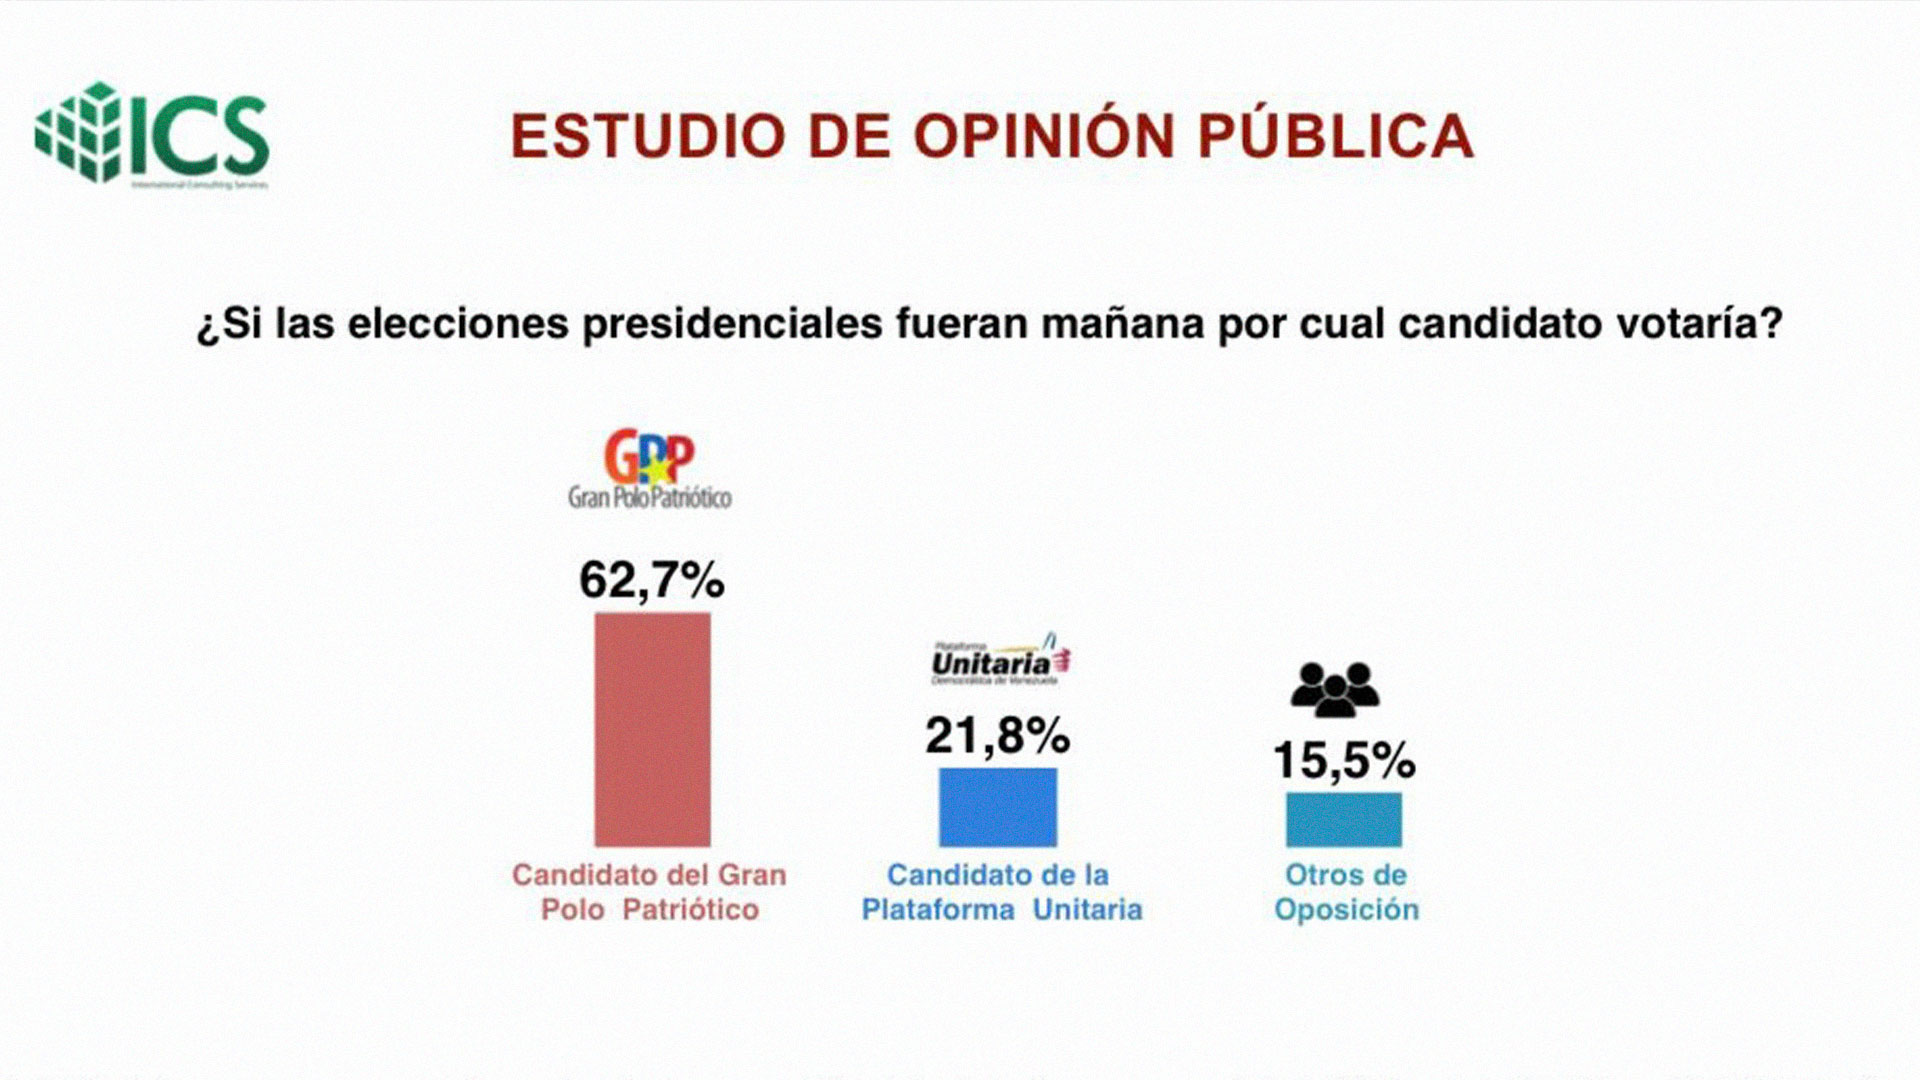 La mayoría de los venezolanos (62%) expresaría su apoyo a Maduro en las elecciones presidenciales